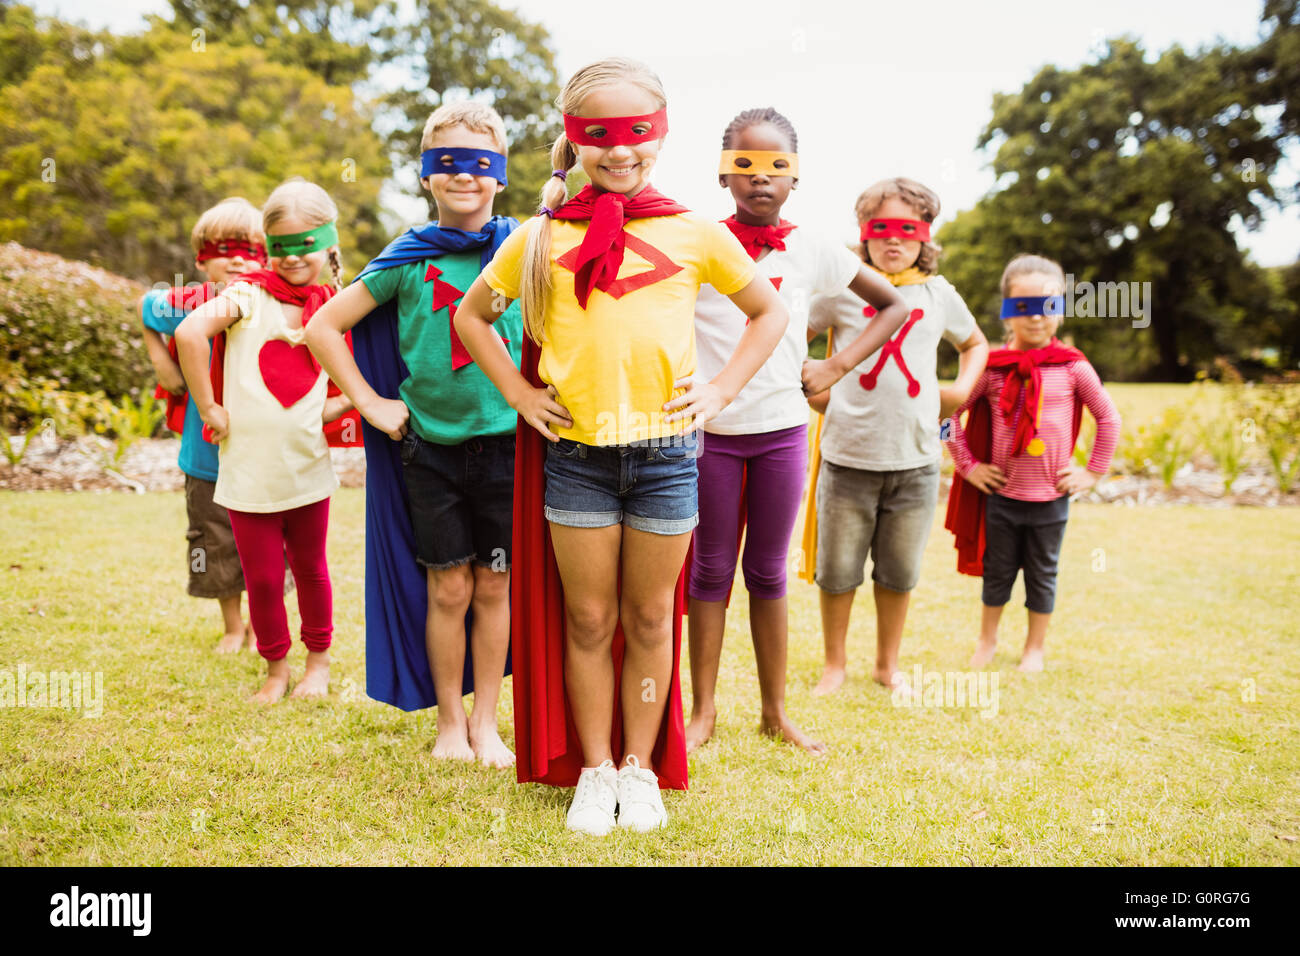 Children wearing superhero costume standing Stock Photo